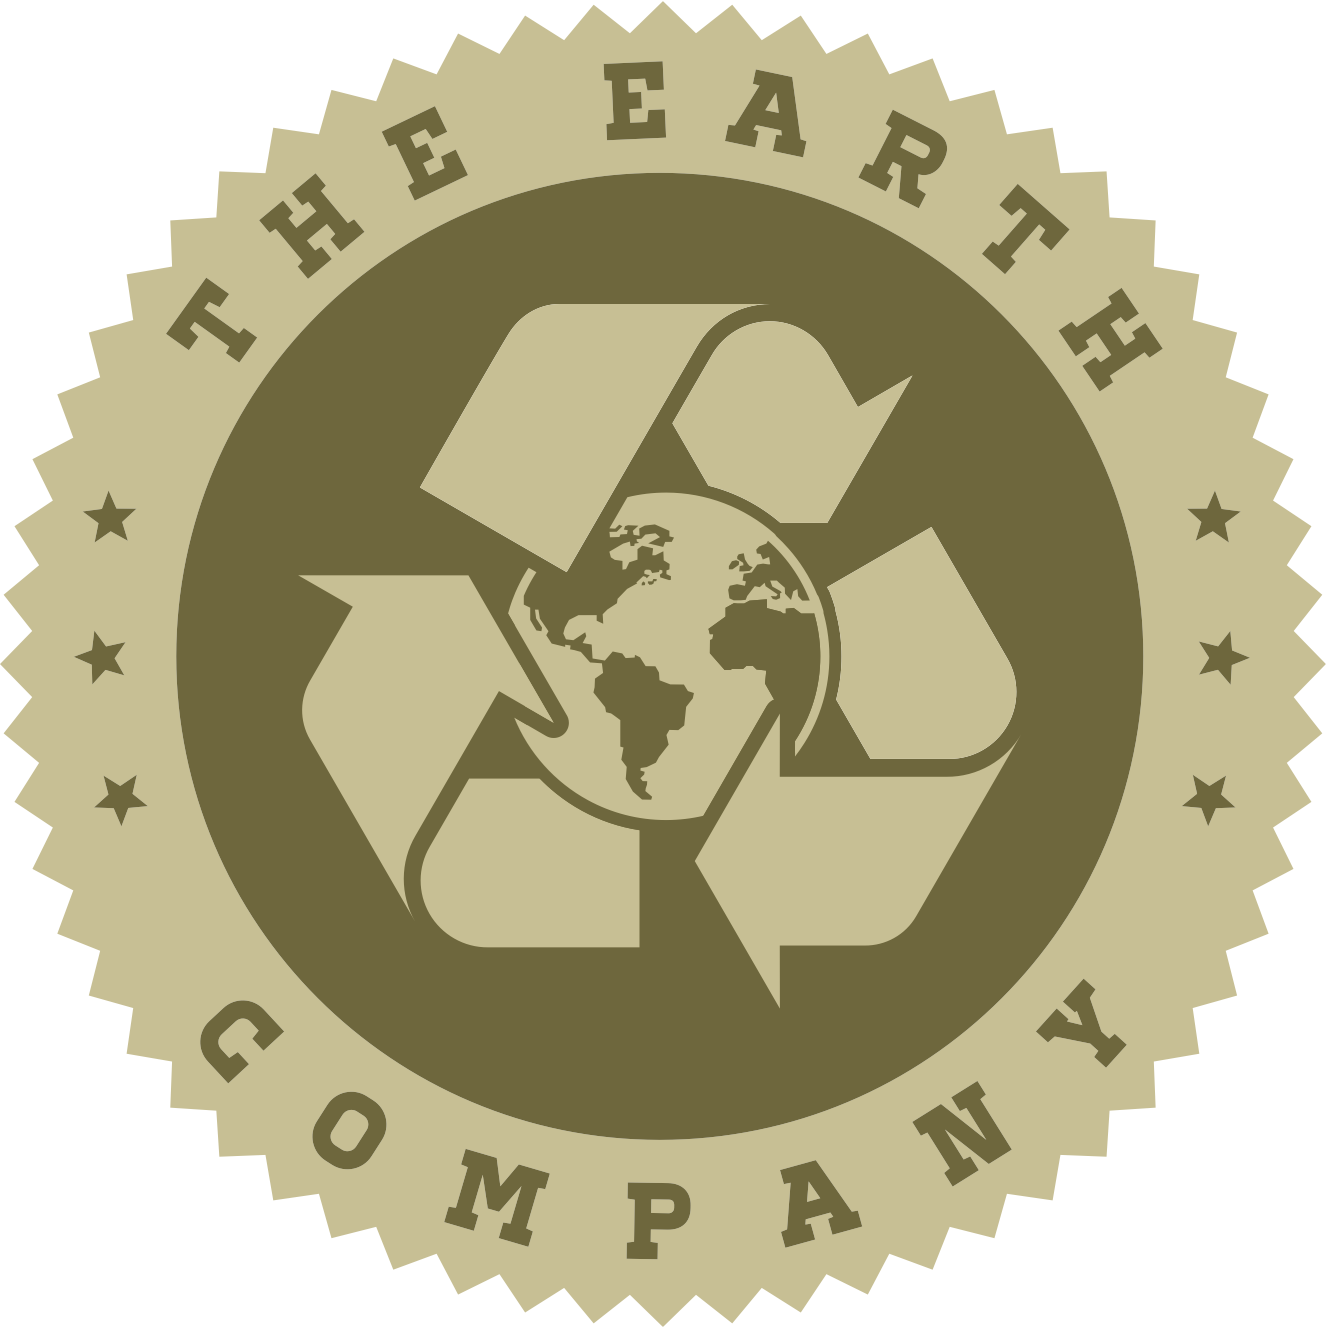 The Earth Company